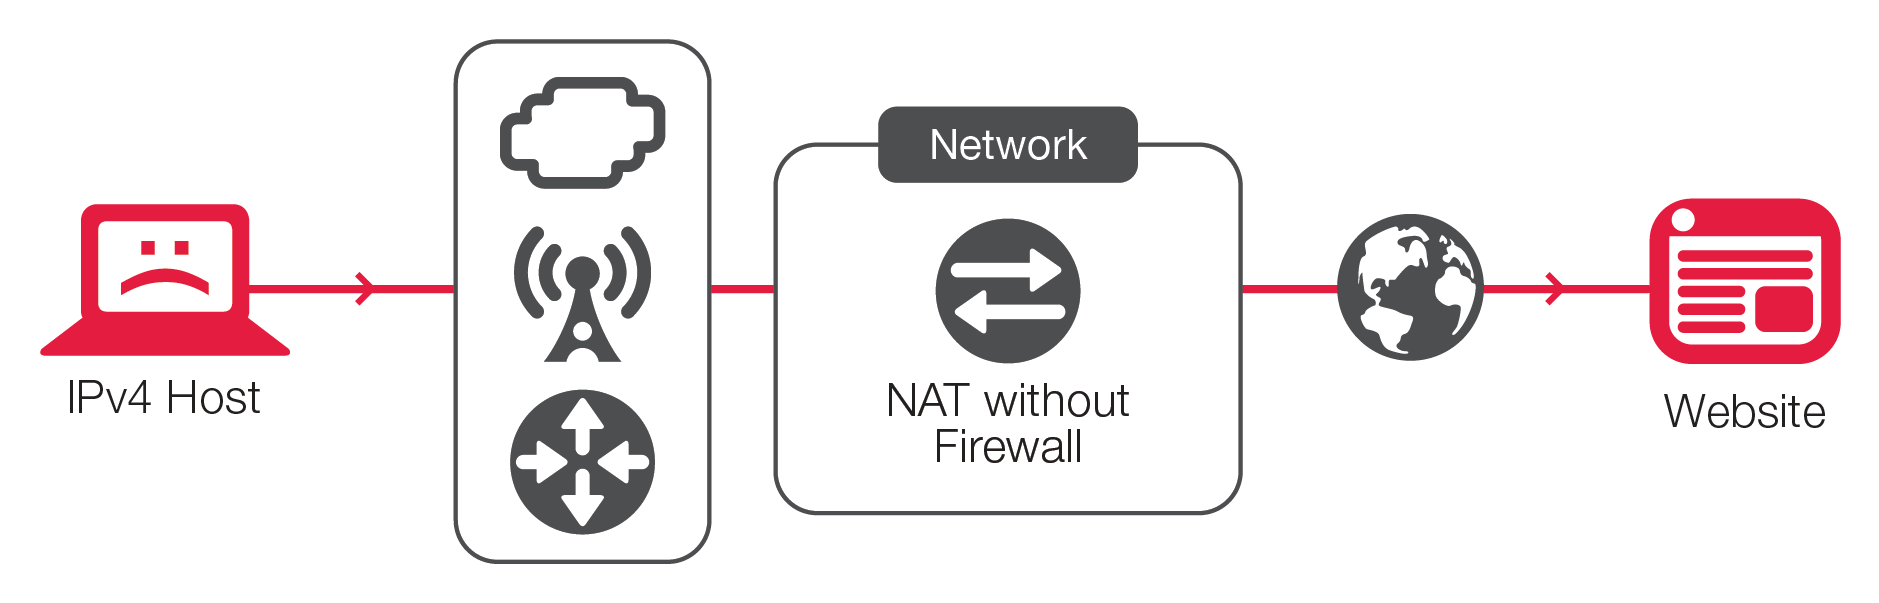 有状态 NAT 不会为有意愿或不情愿的内部主机提供任何保护，这可能被僵尸网络用来攻击网络或外部目标。